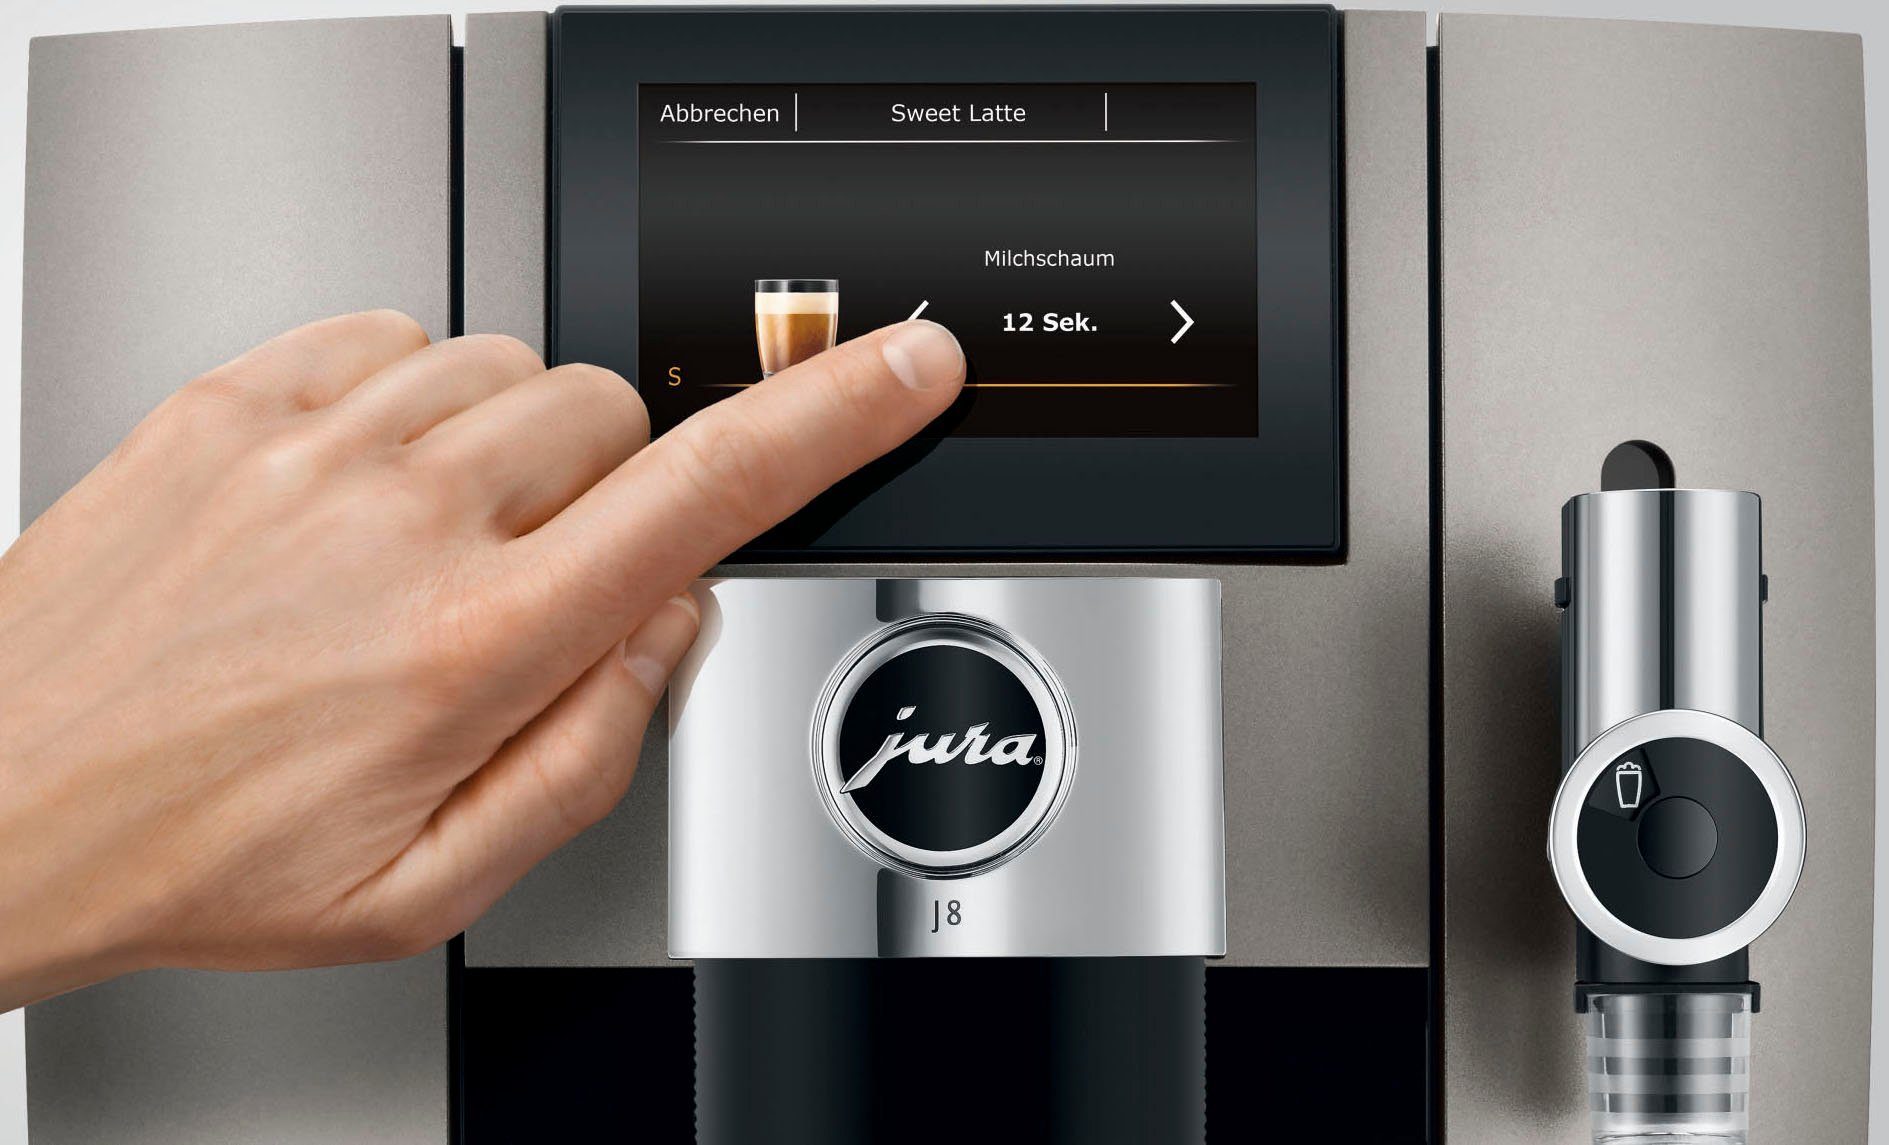 15471 J8 (EA) Kaffeevollautomat JURA